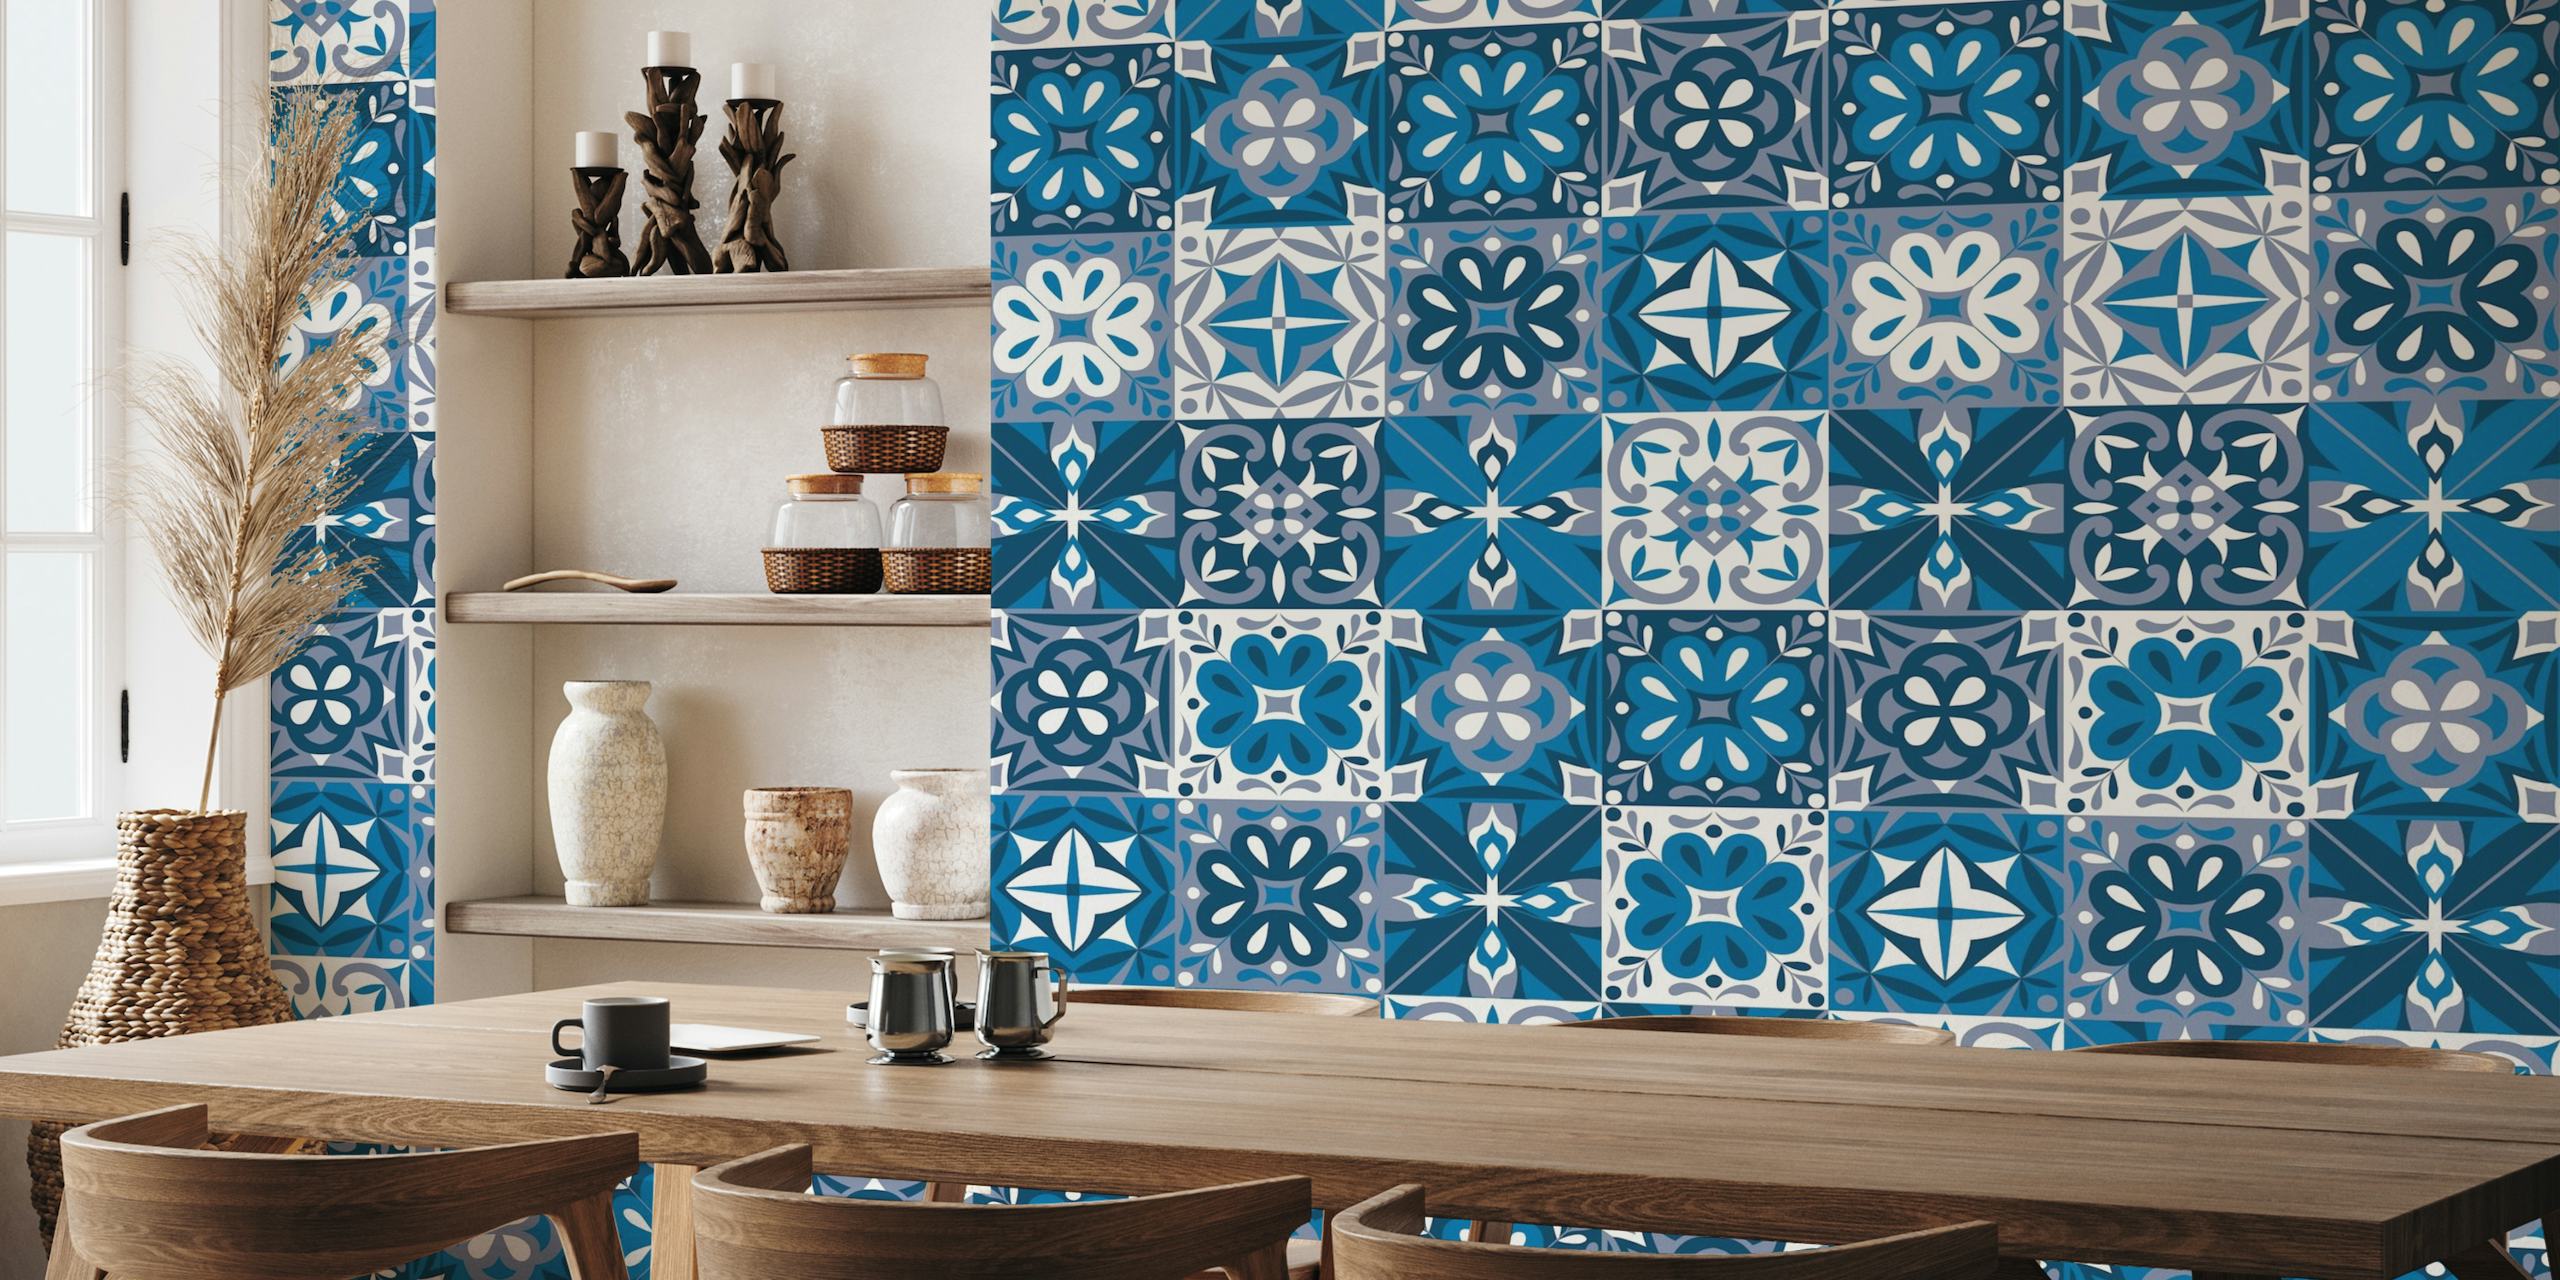 Portugalski wzór płytek Azulejo w kolorze niebieskim i białym na fototapecie